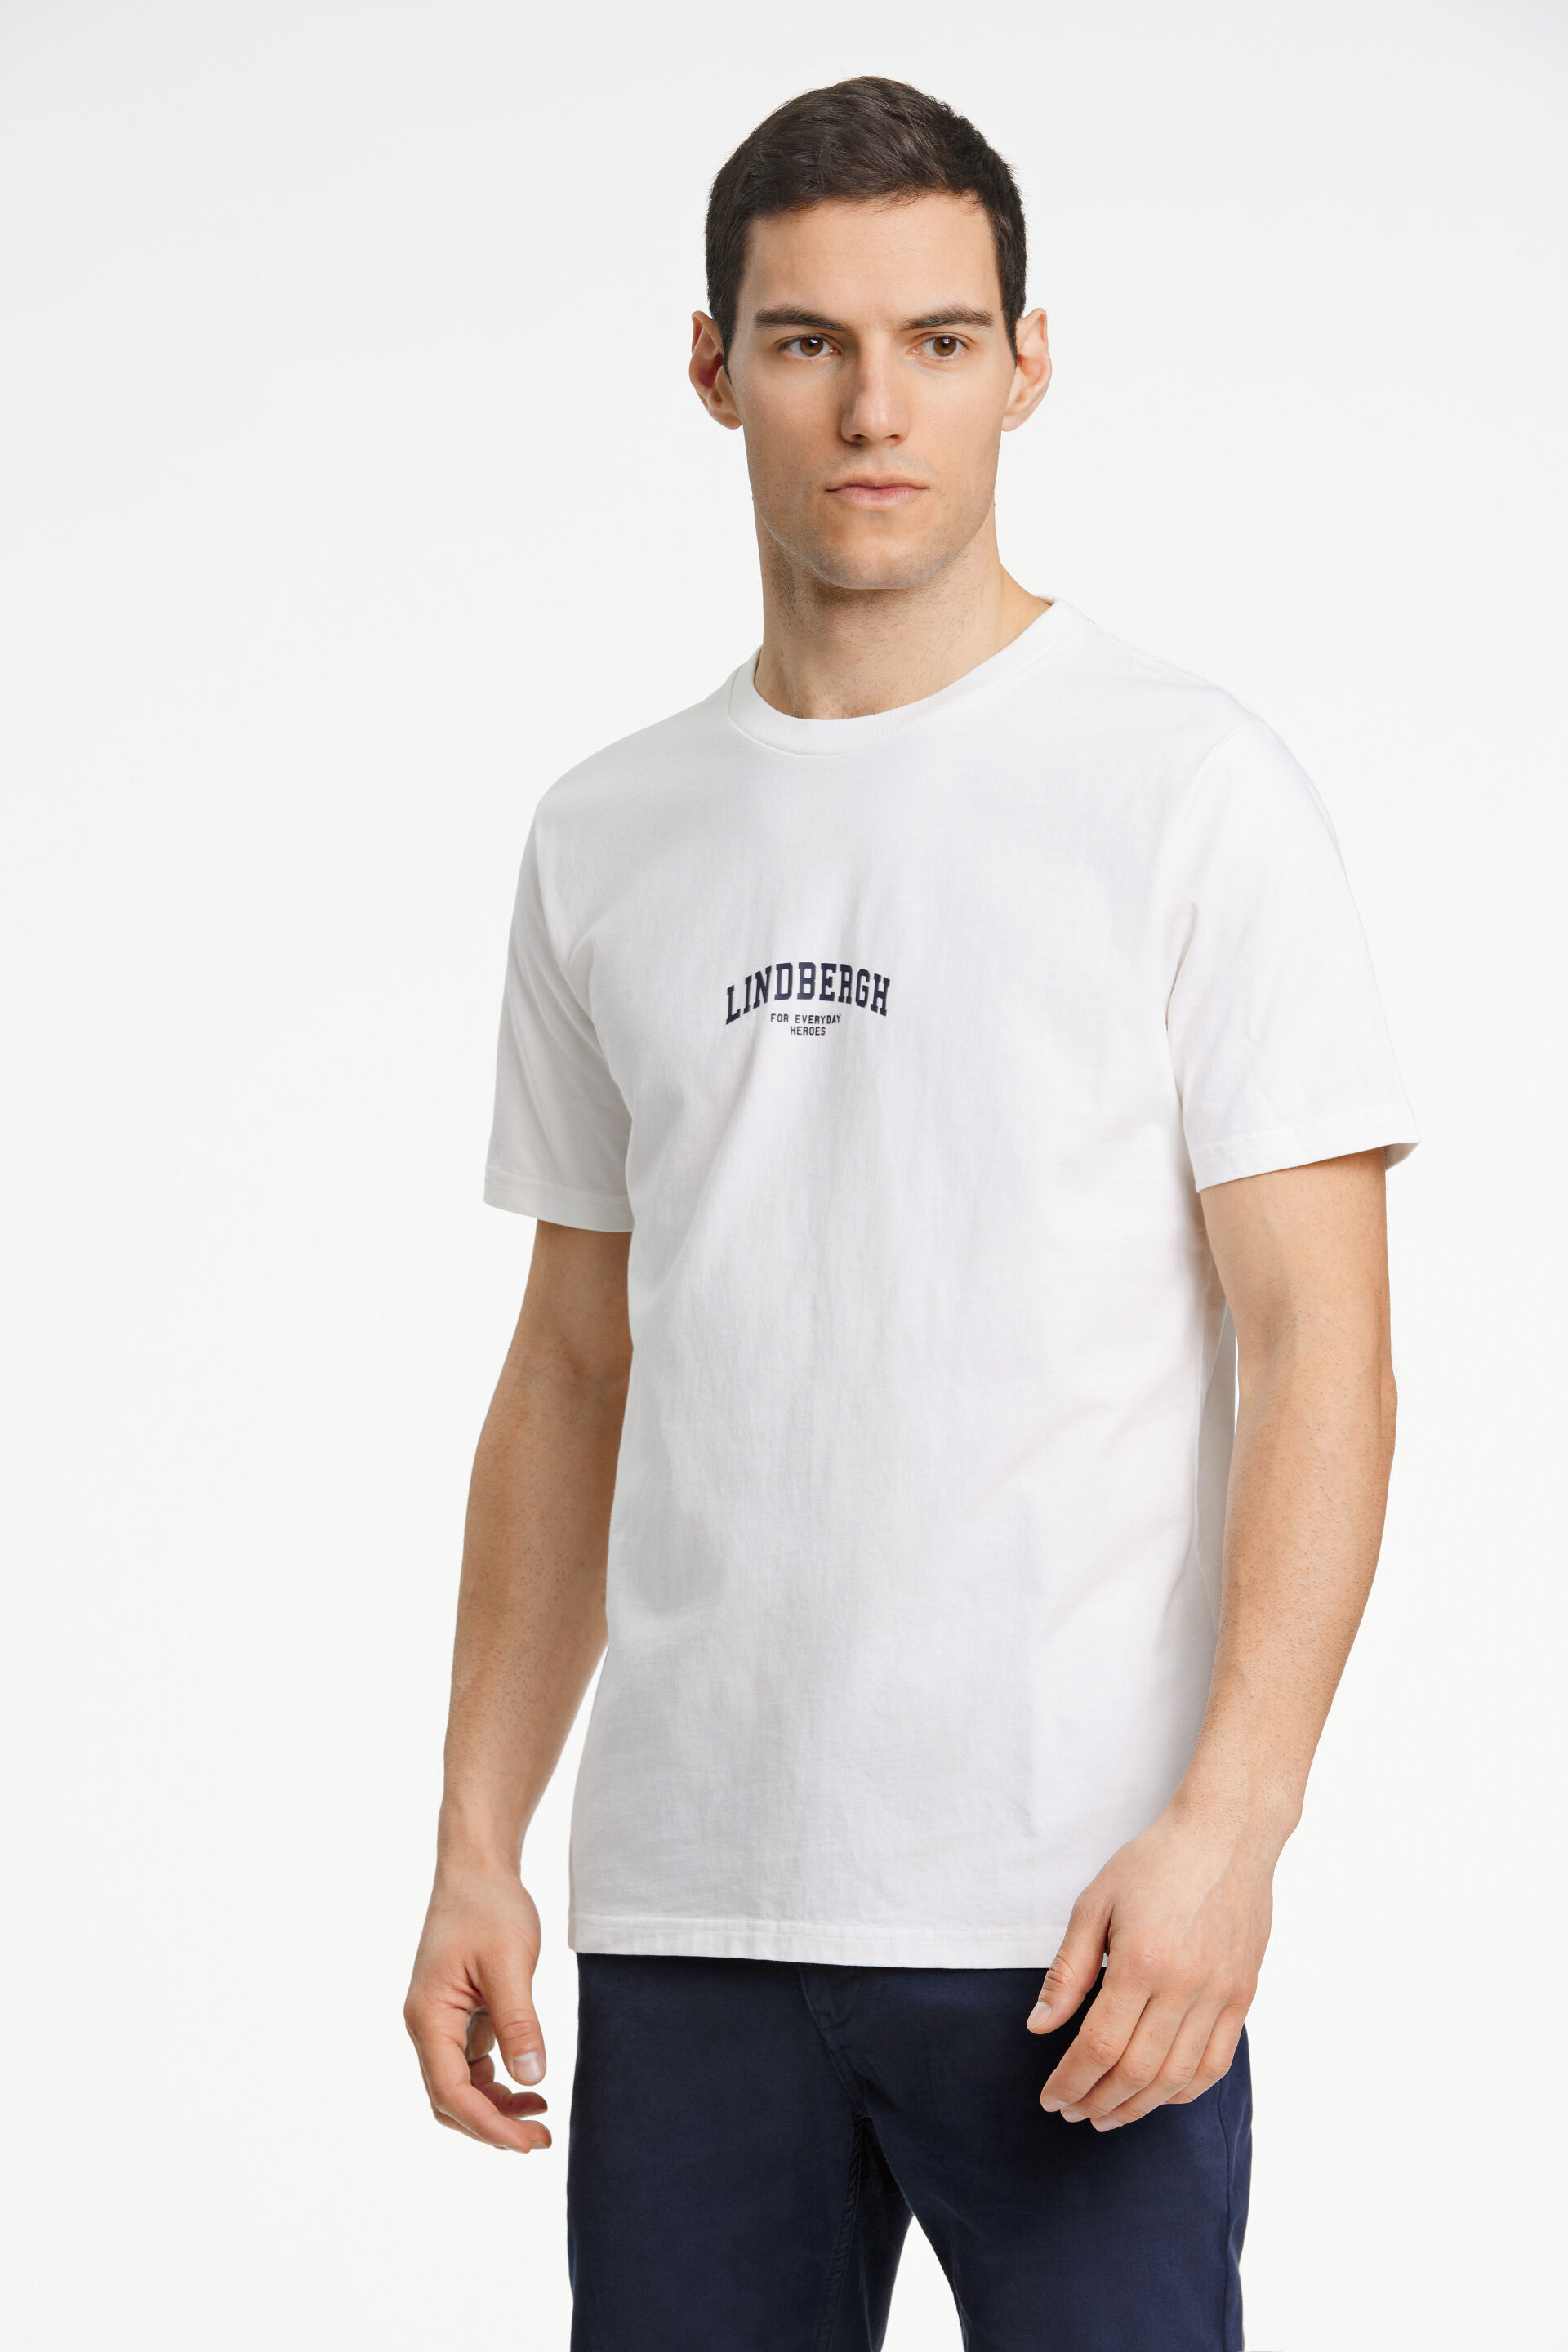 T-shirt T-shirt Weiss 30-420152